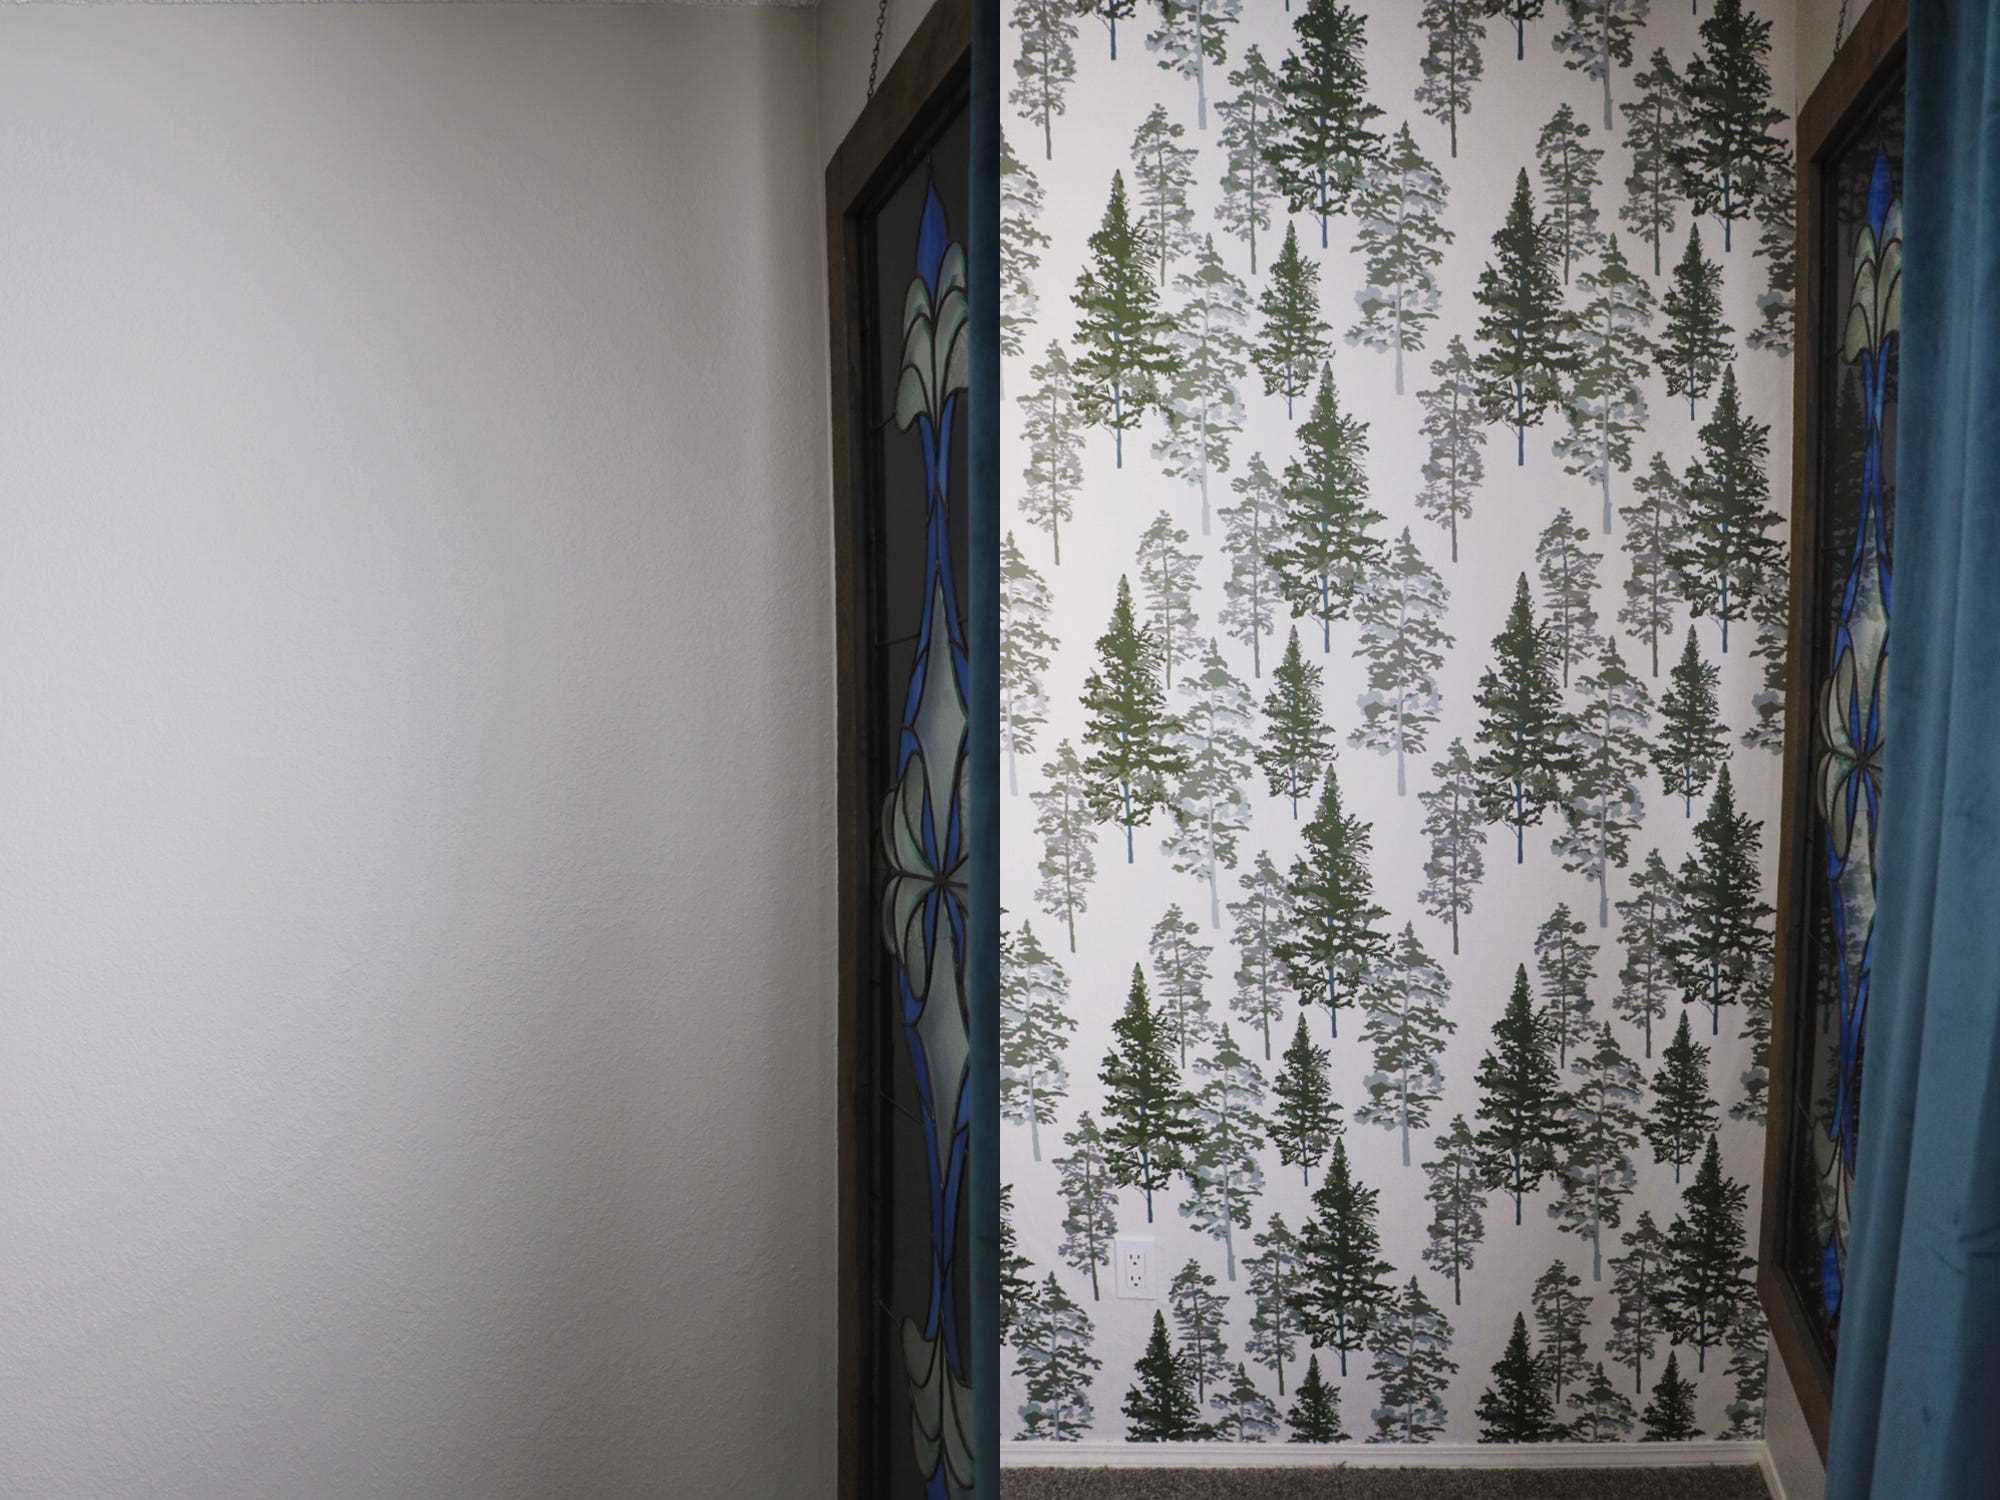 Vorher-Nachher-Collage einer schlichten weißen Wand und der gleichen Wand mit weißer und grüner Abziehtapete mit Baumdruck von Chasing Paper.